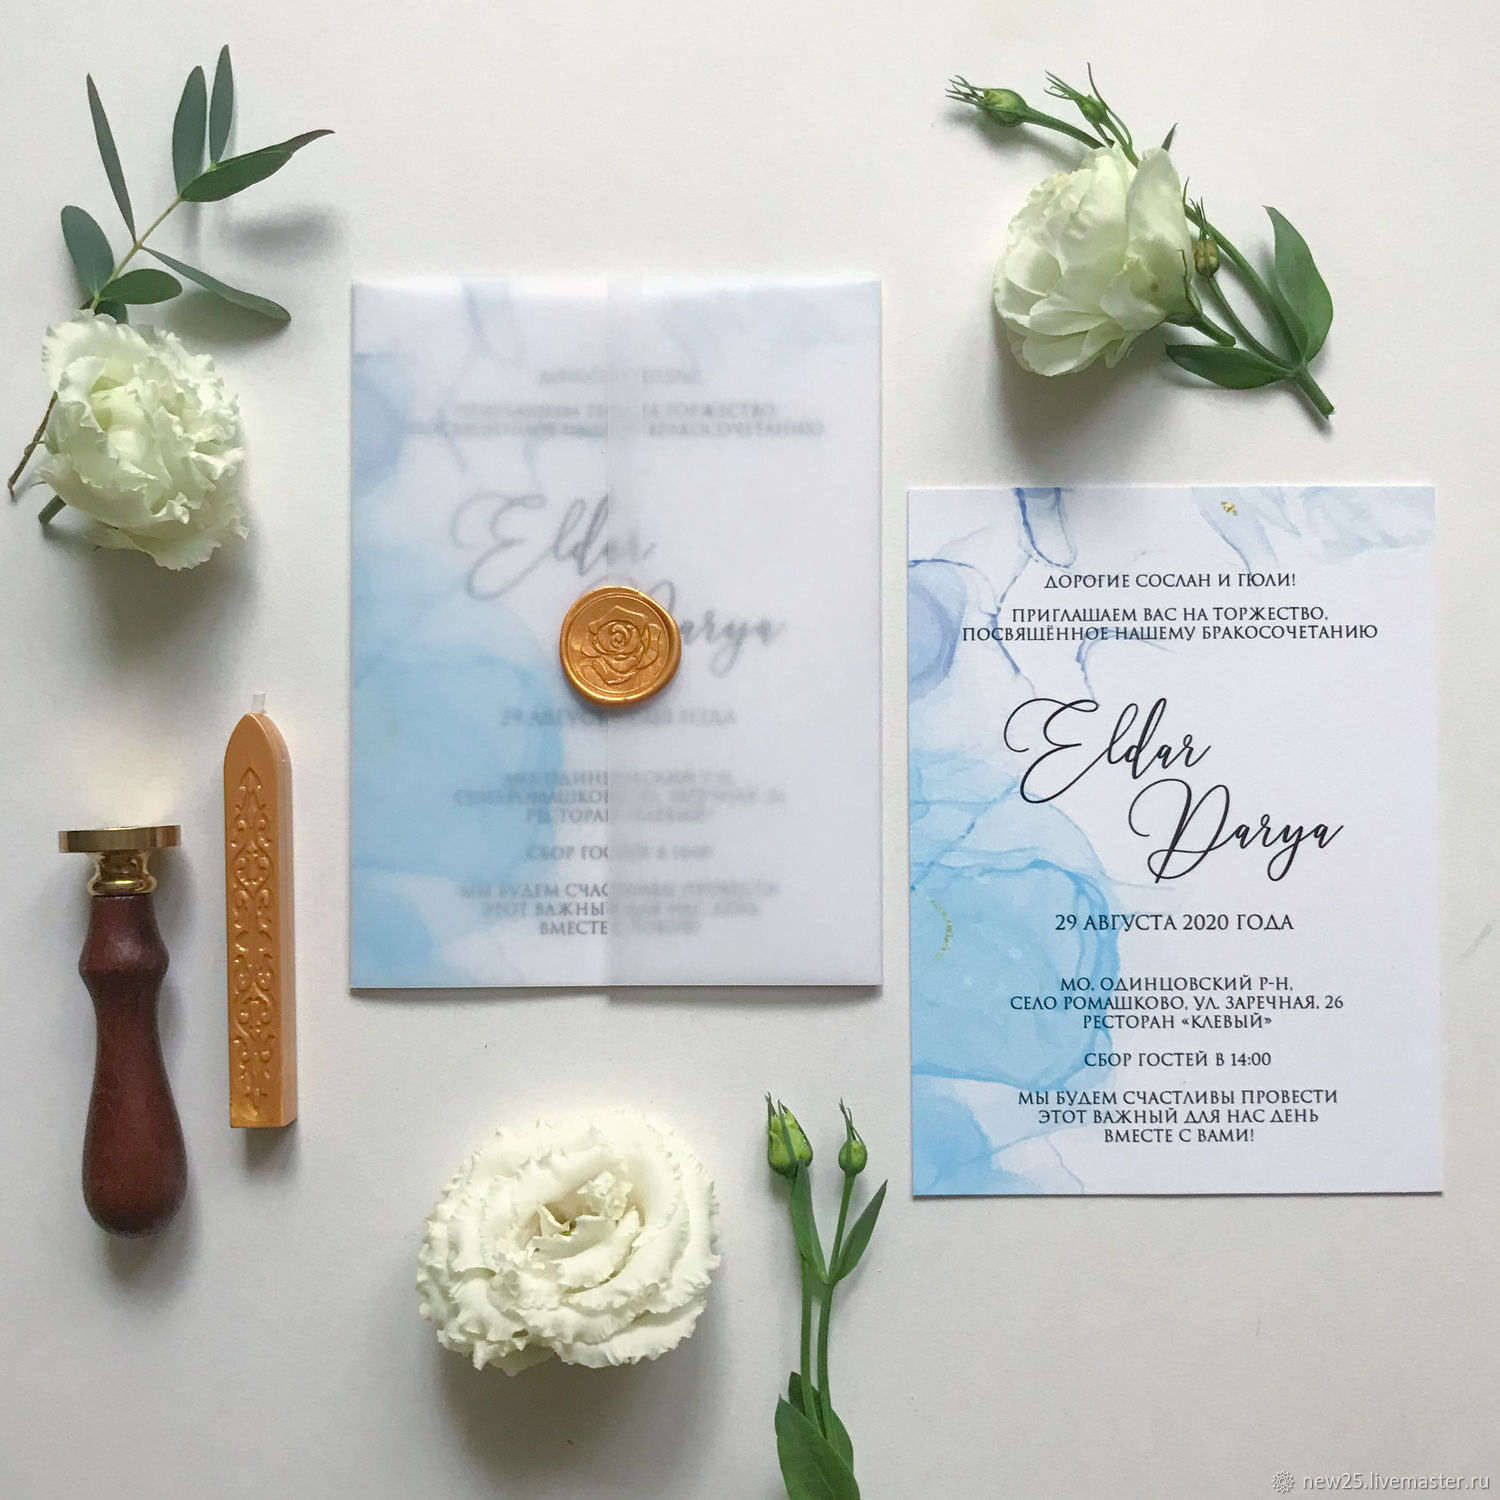 Приглашения на свадьбу: образцы текстов, как заполнять и подписывать